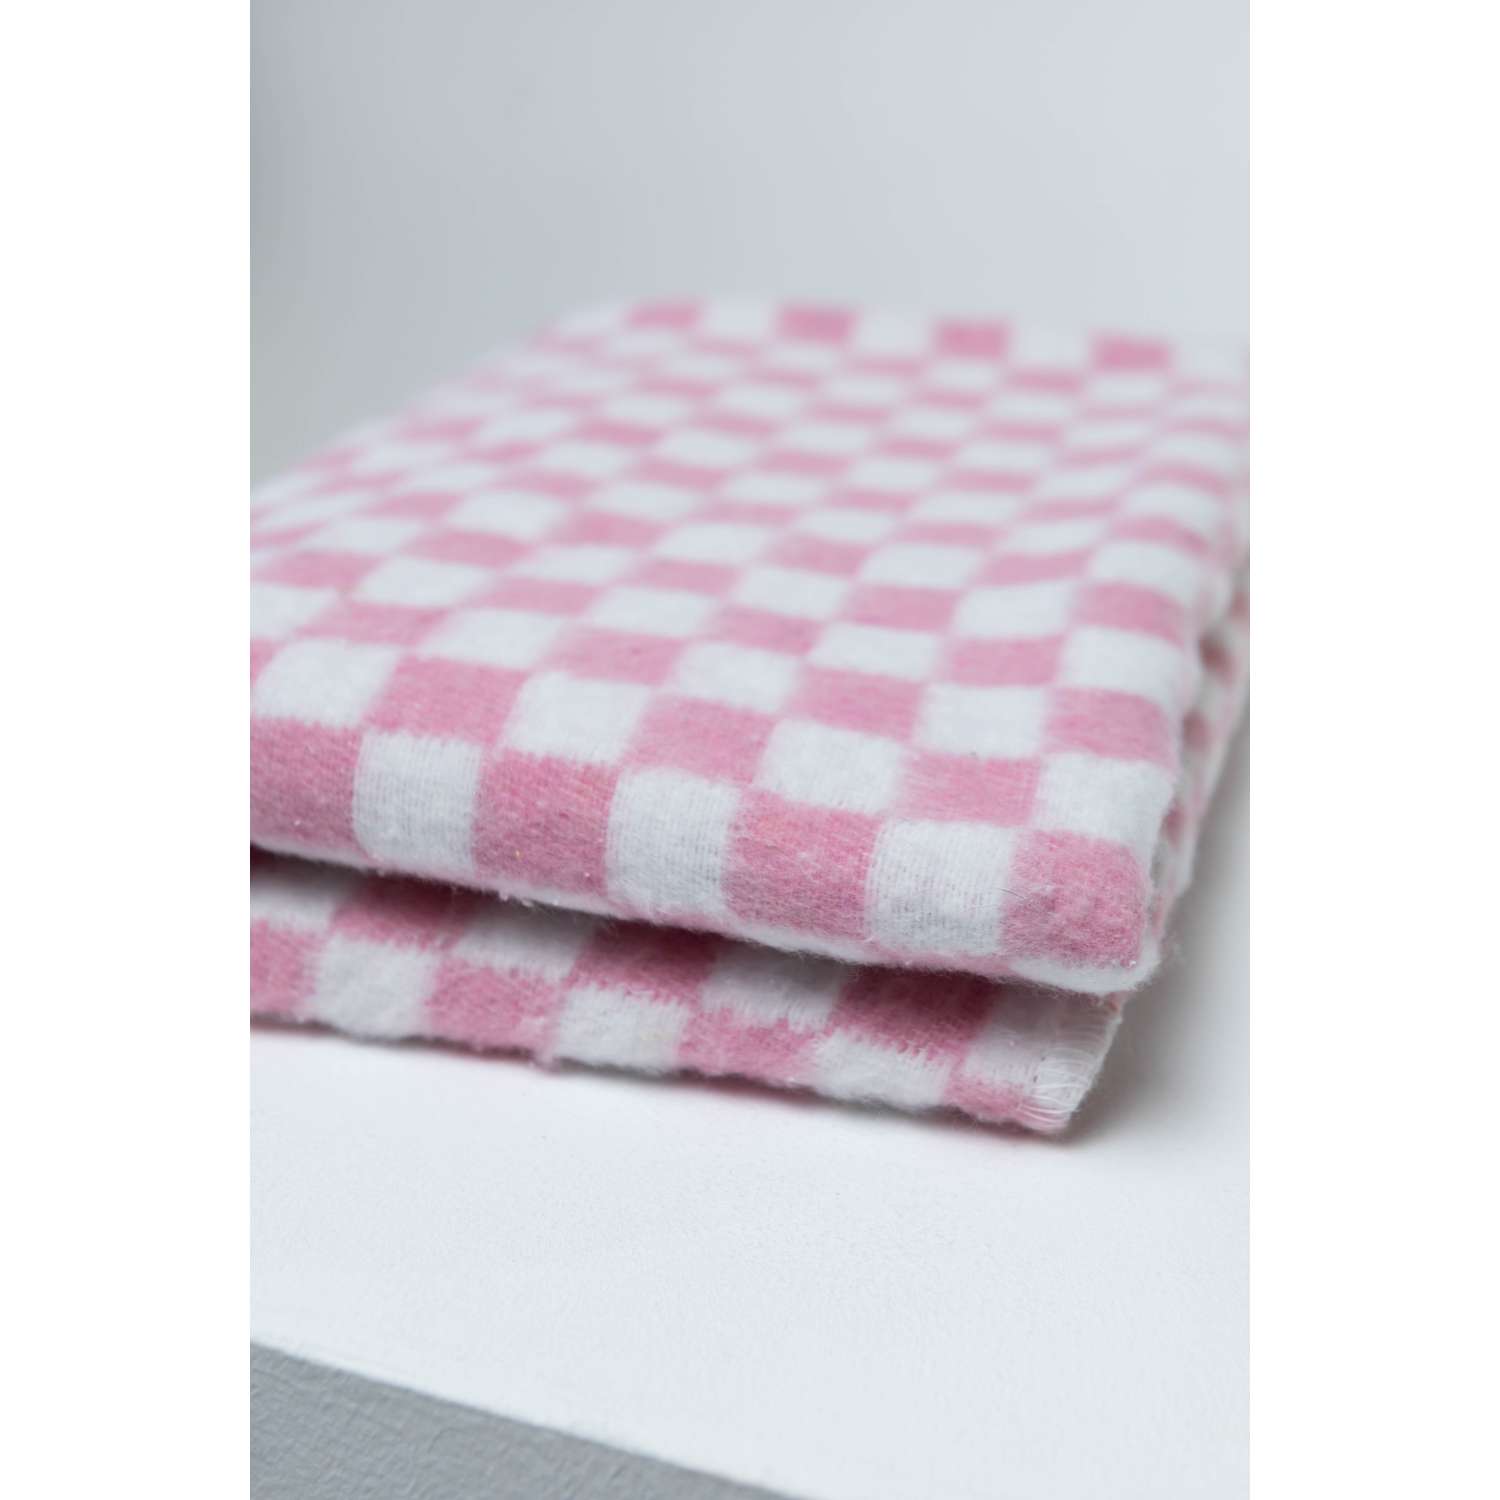 Одеяло байковое Суконная фабрика г. Шуя 140х205 рисунок клетка розовый - фото 6